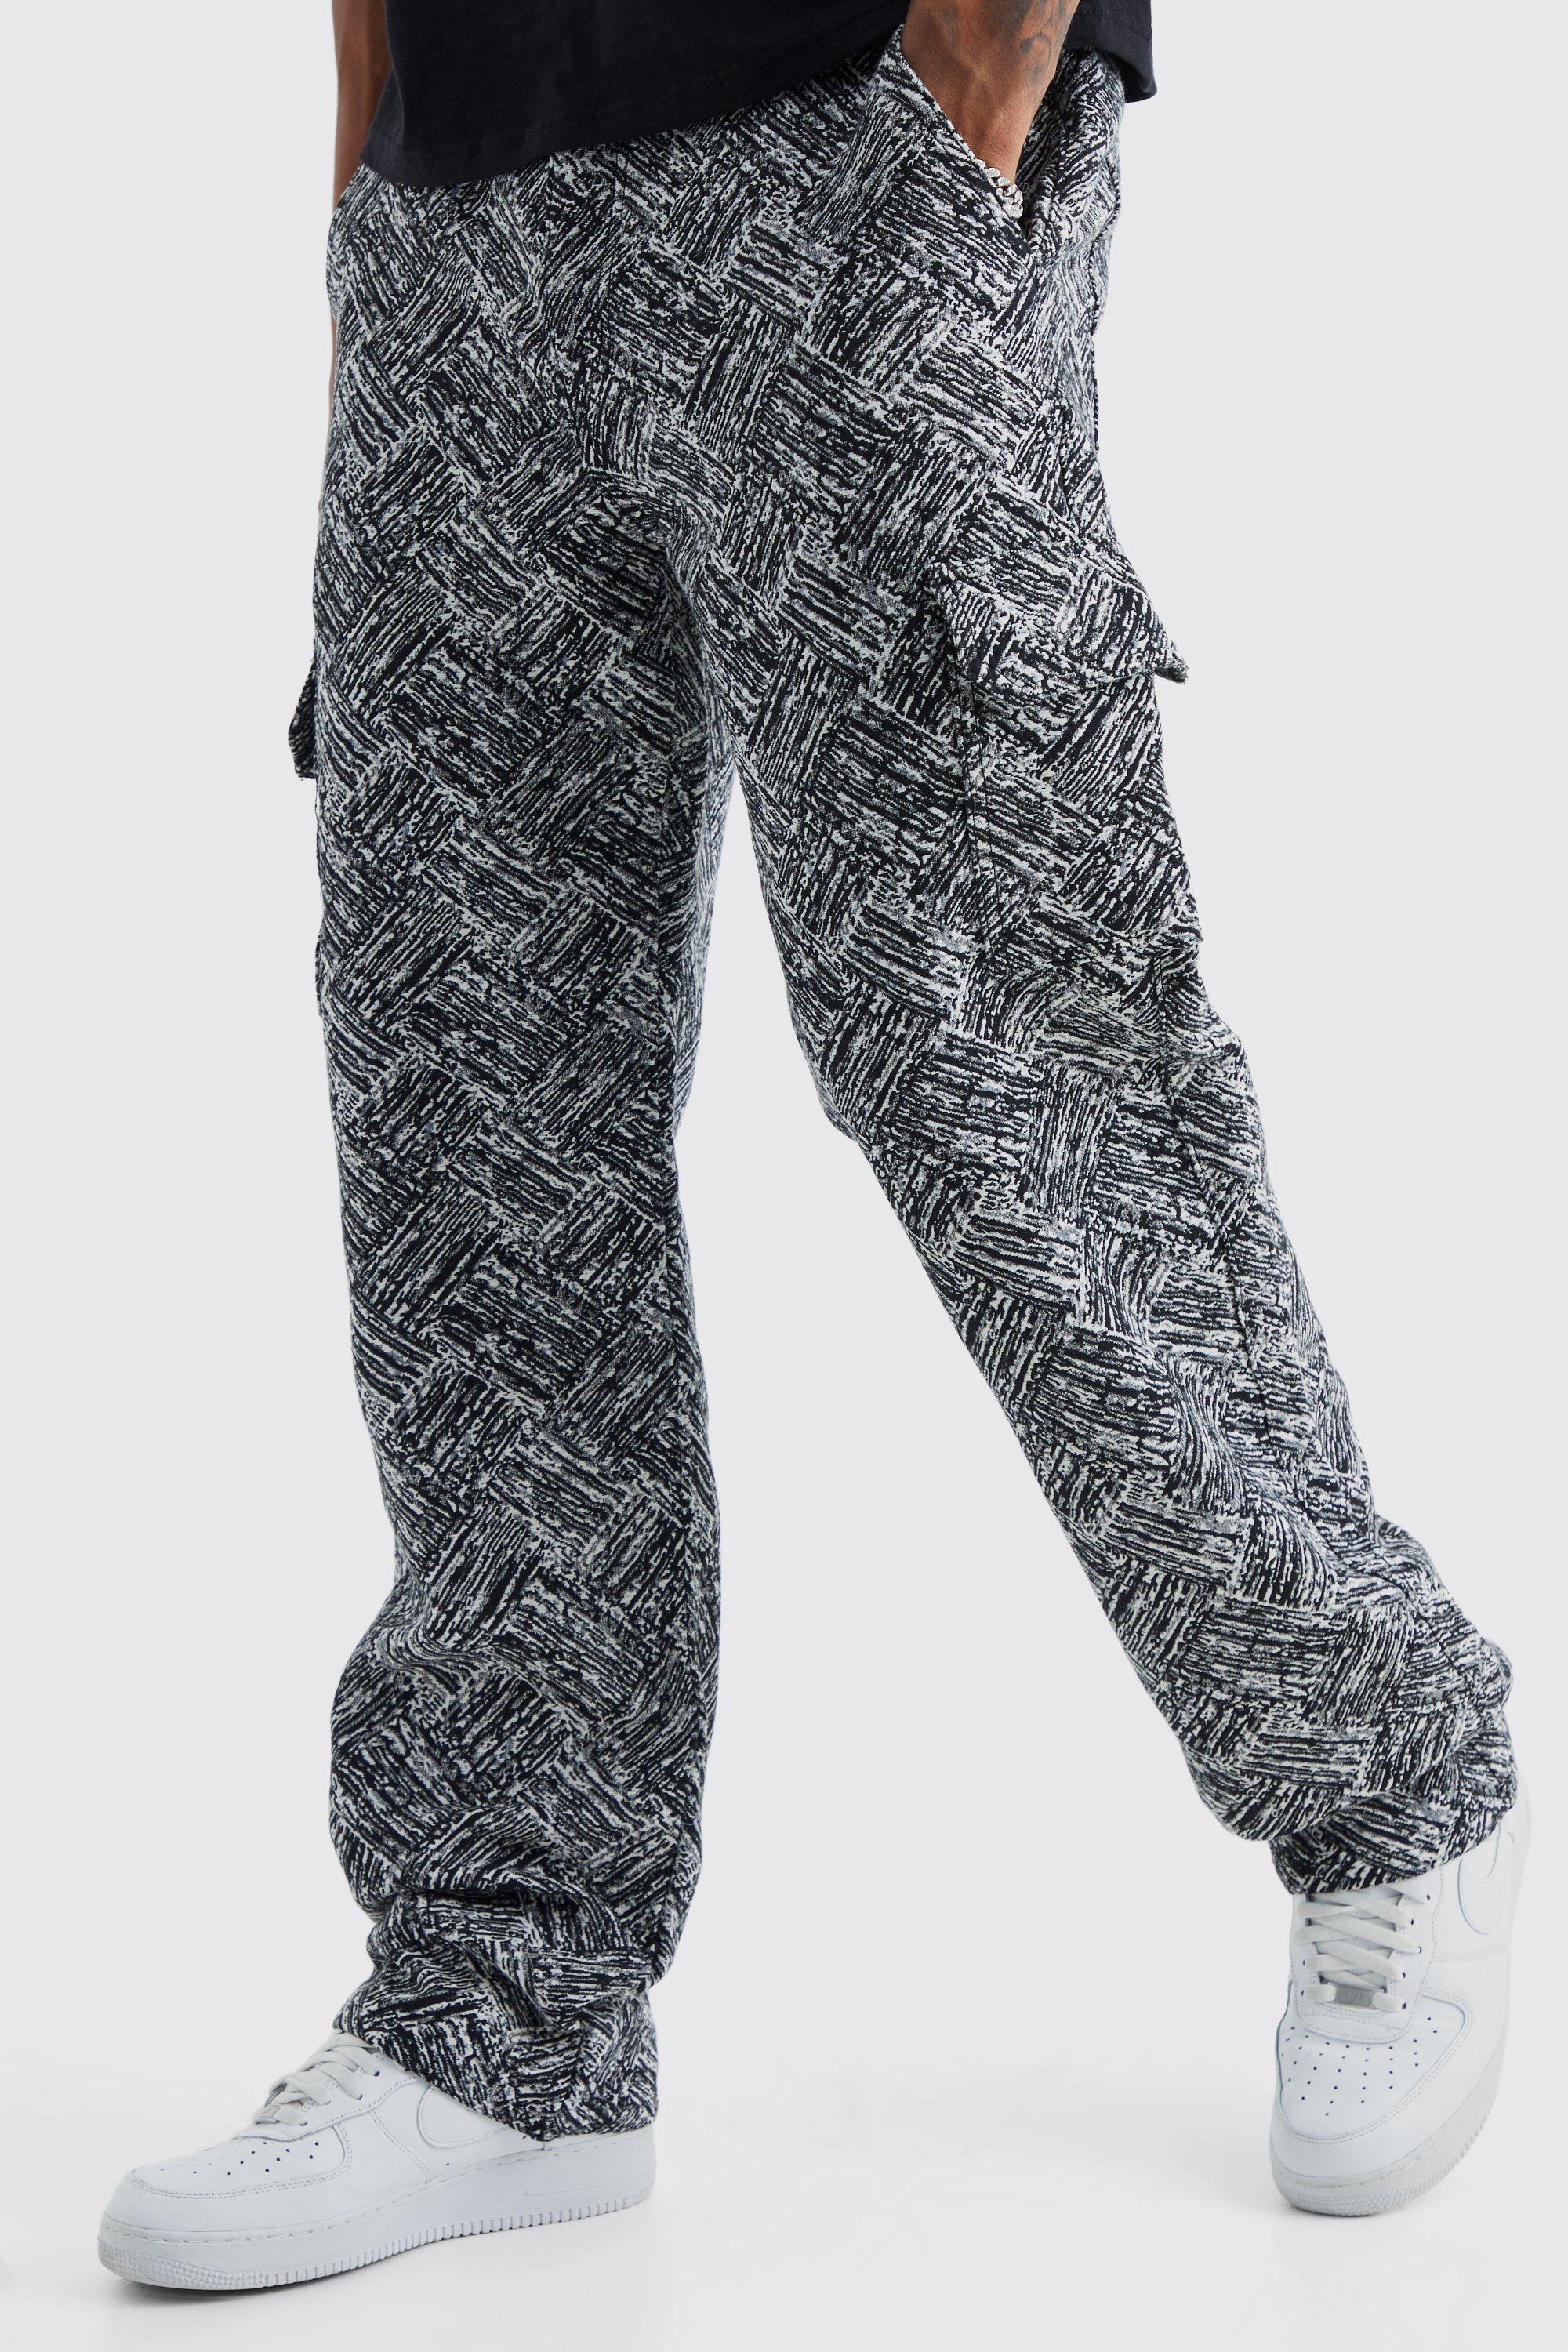 tall - pantalon cargo large à motif tapisserie homme - gris - 38, gris